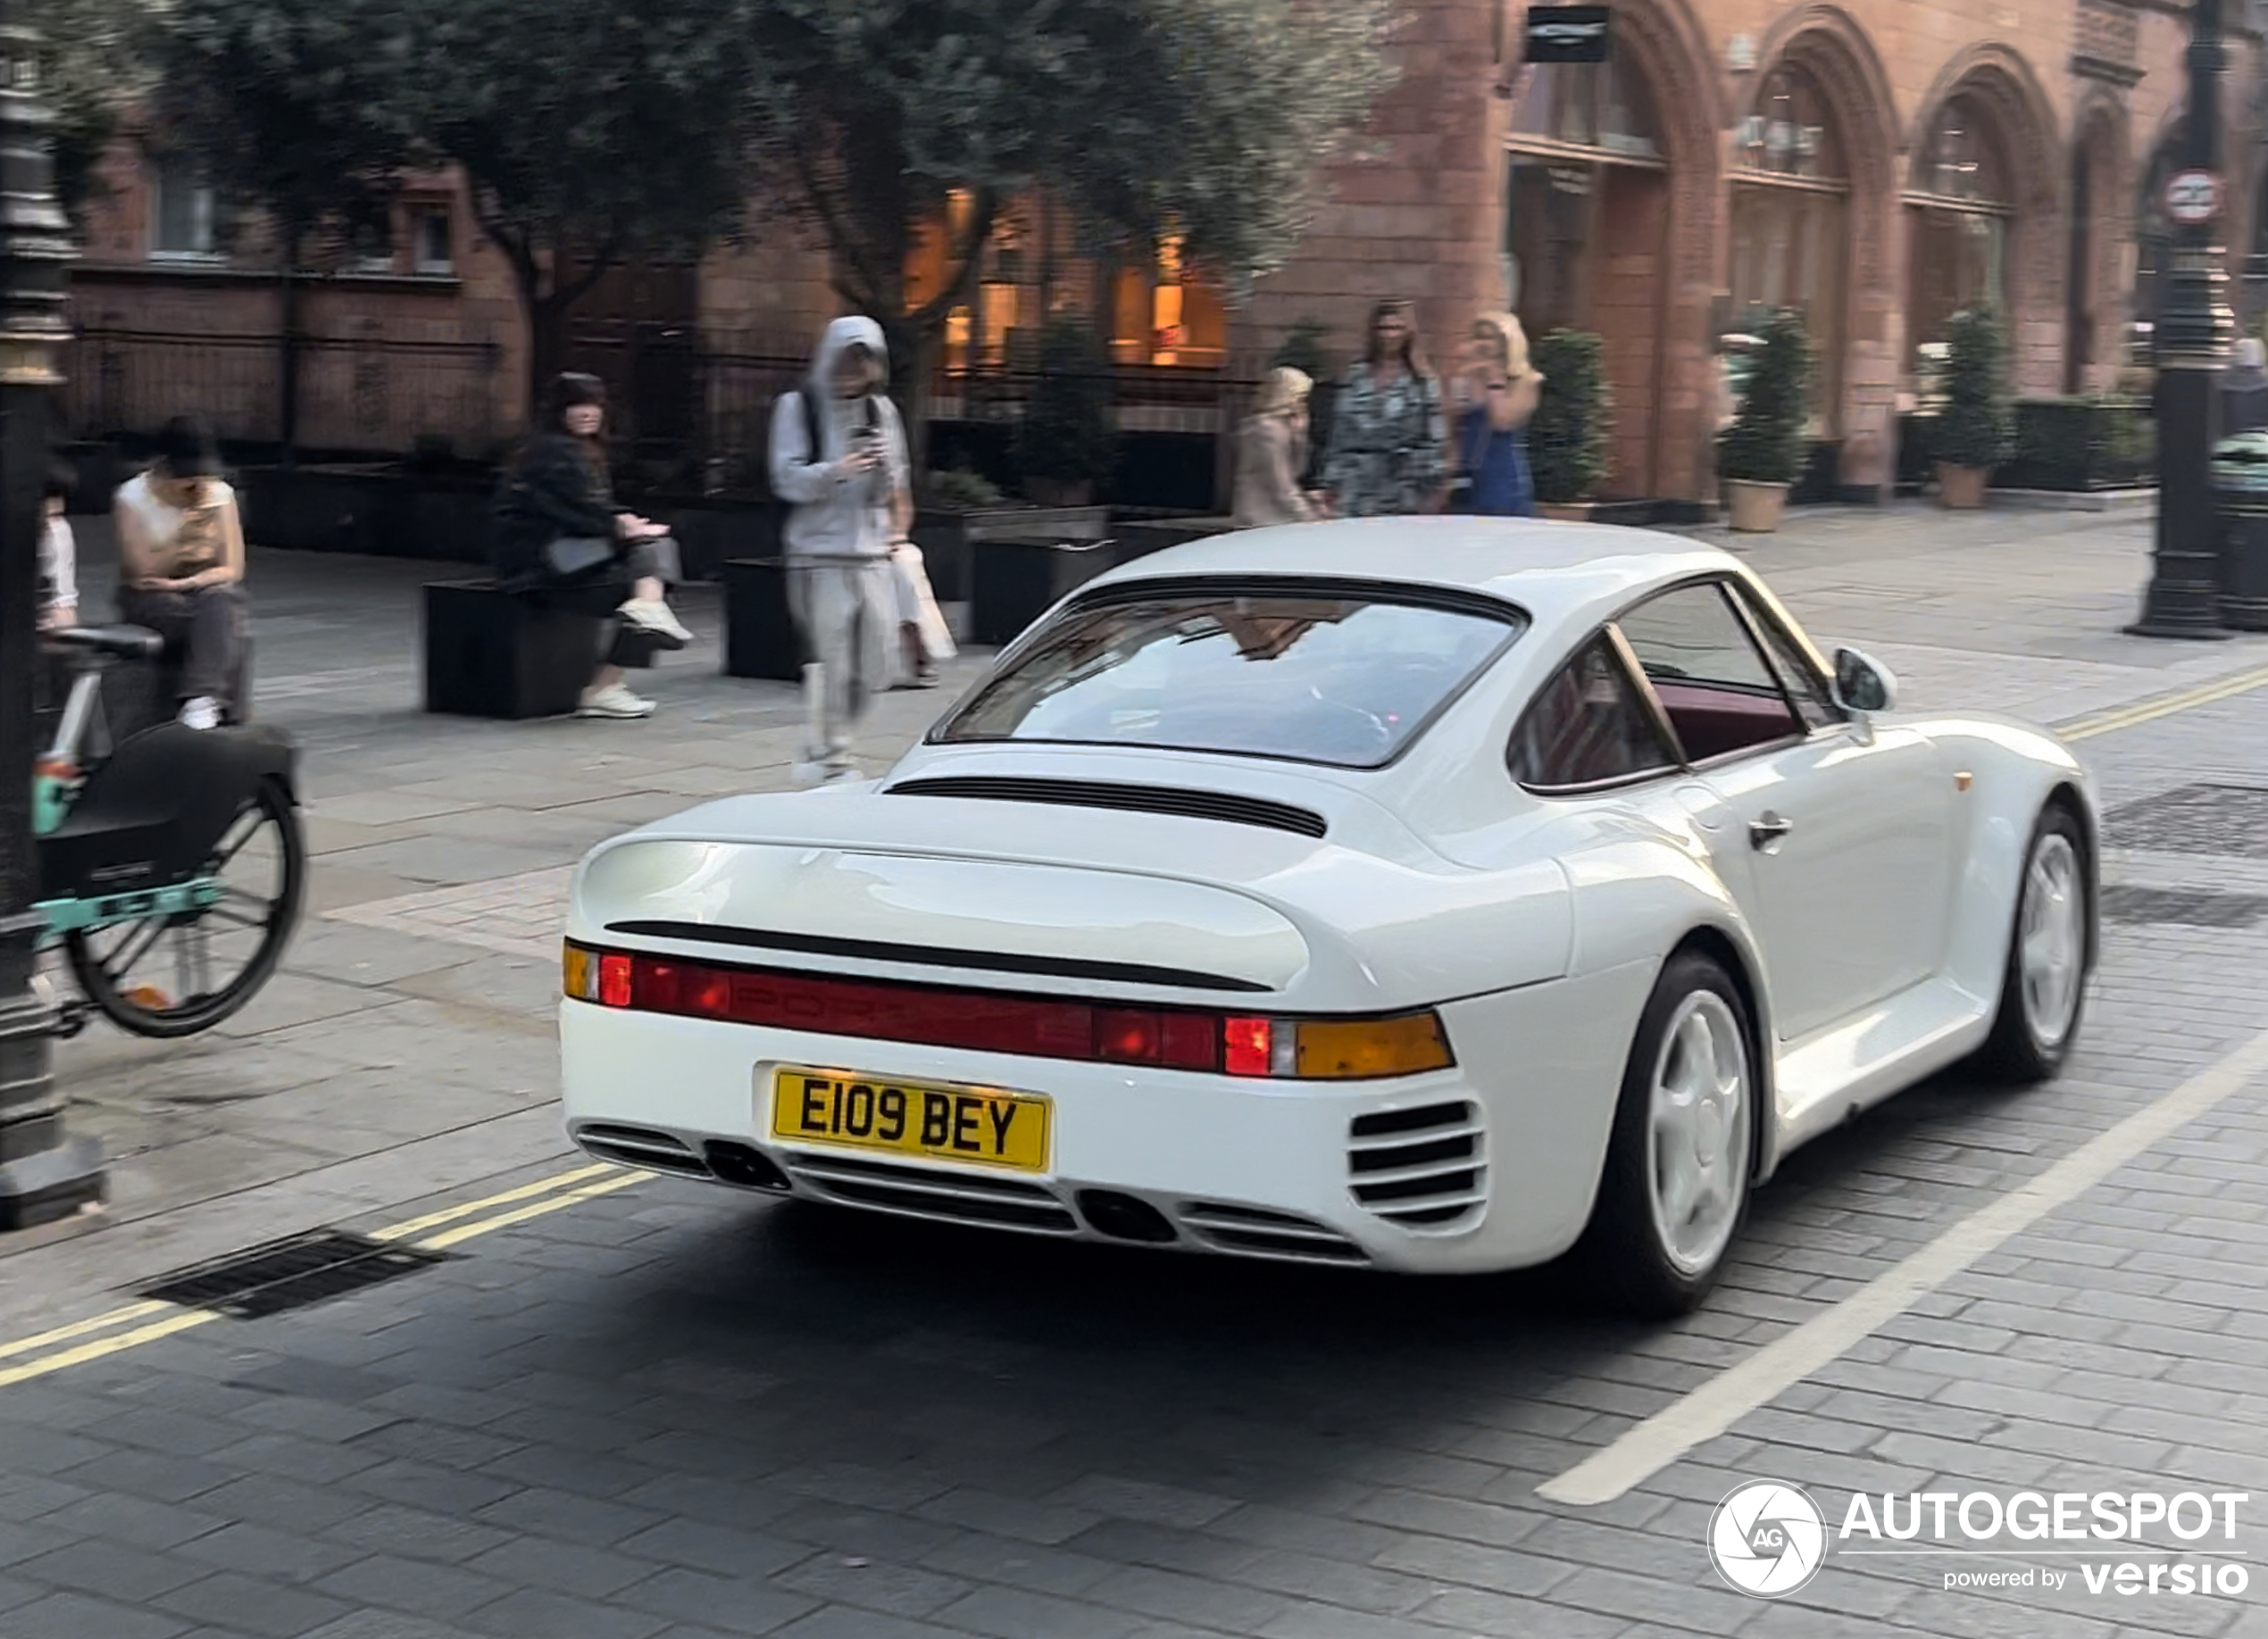 Have you ever seen a Porsche 959?